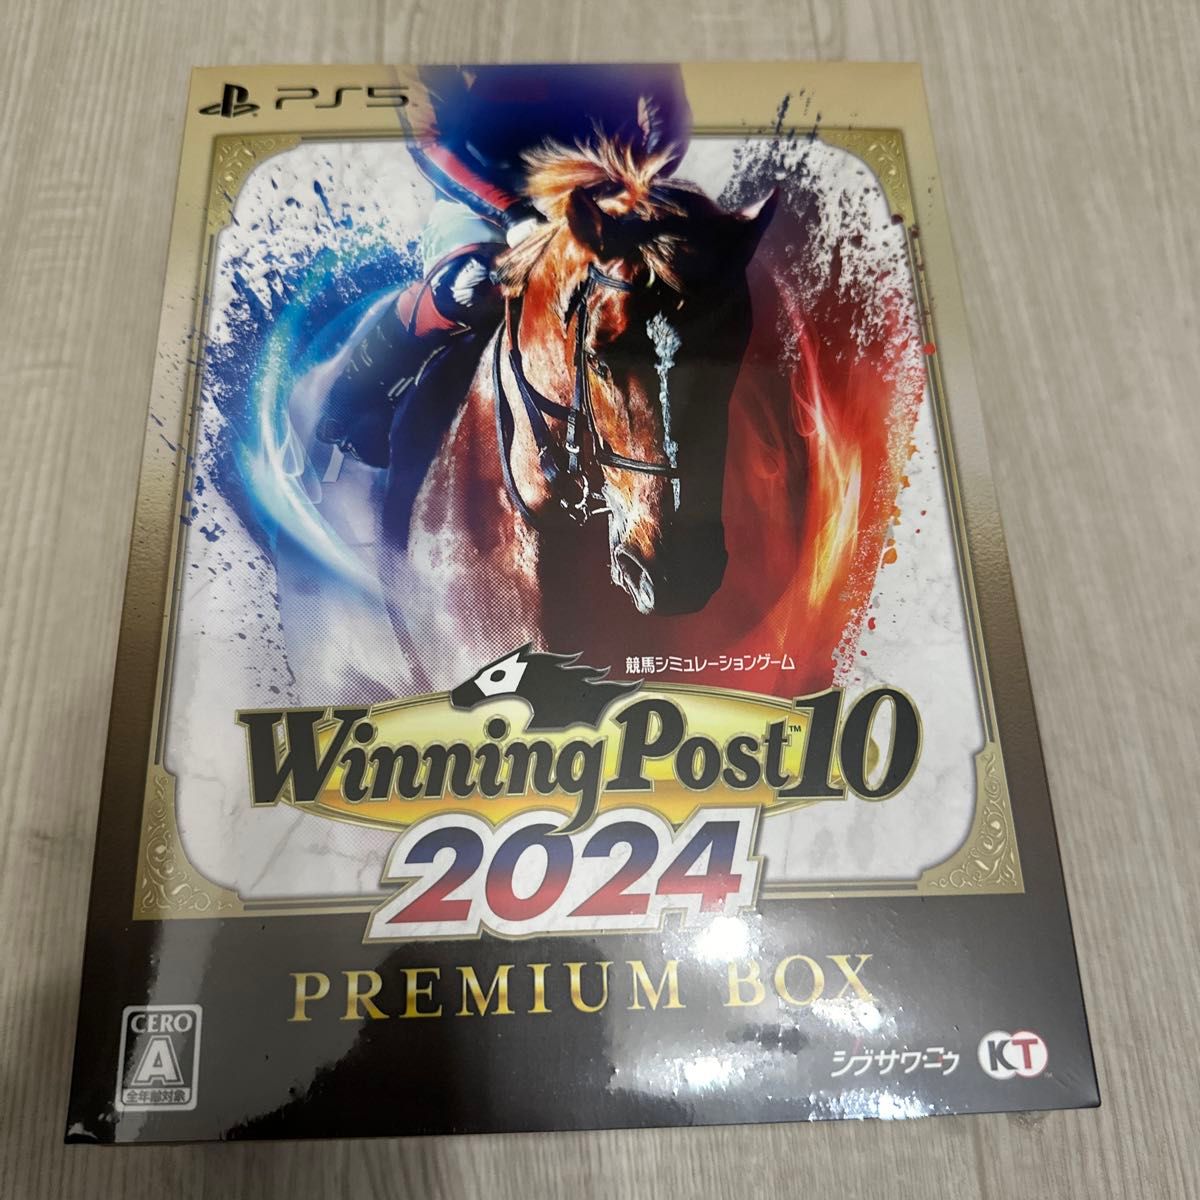 Winning Post 10 2024 プレミア厶ボックスPS5